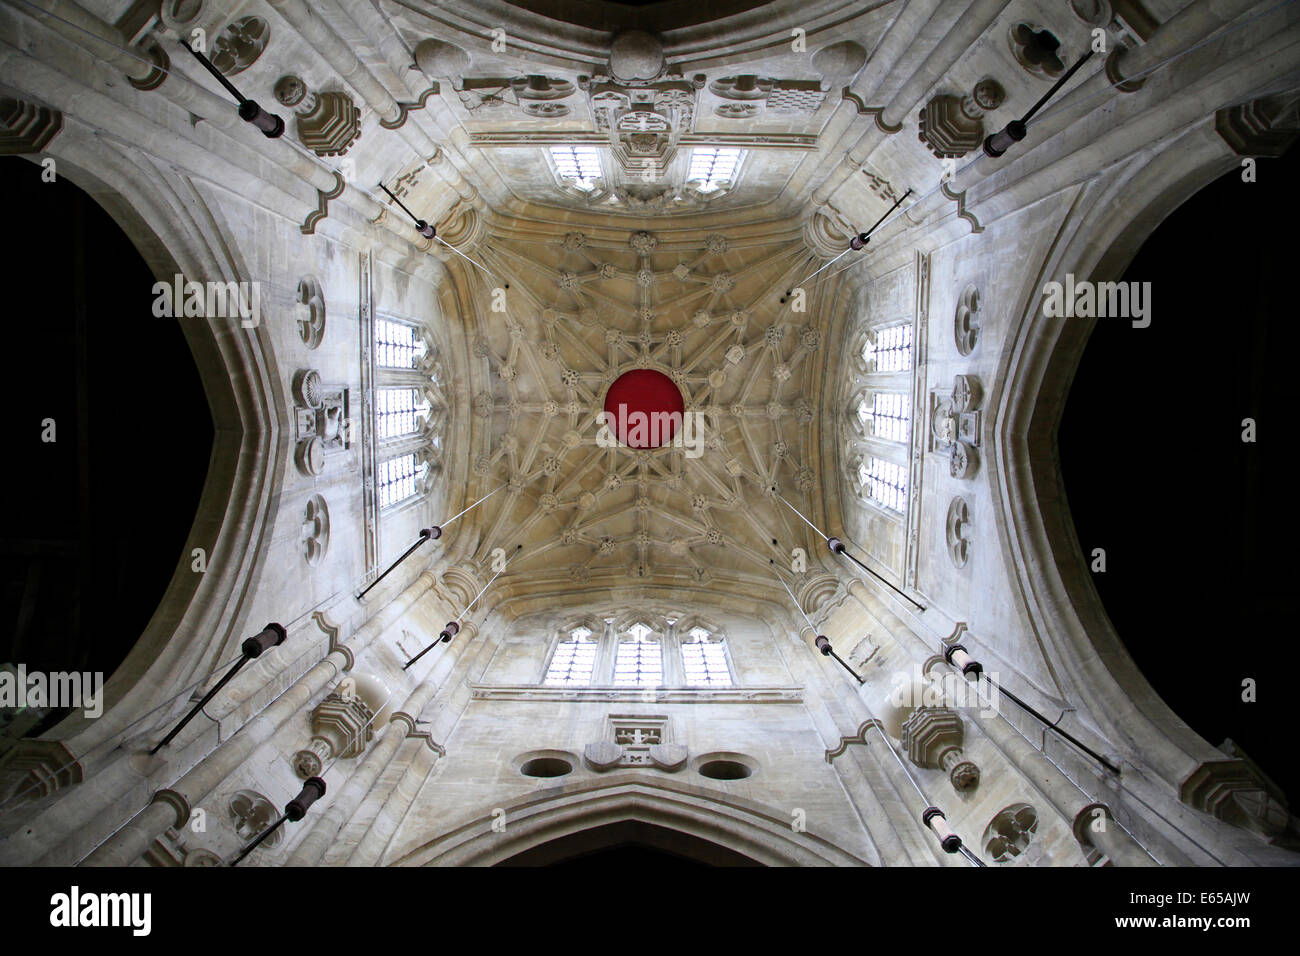 Une vue de l'intérieur de la tour de l'église de Saint Sampson, Cricklade dans Wiltshire, Angleterre. Banque D'Images